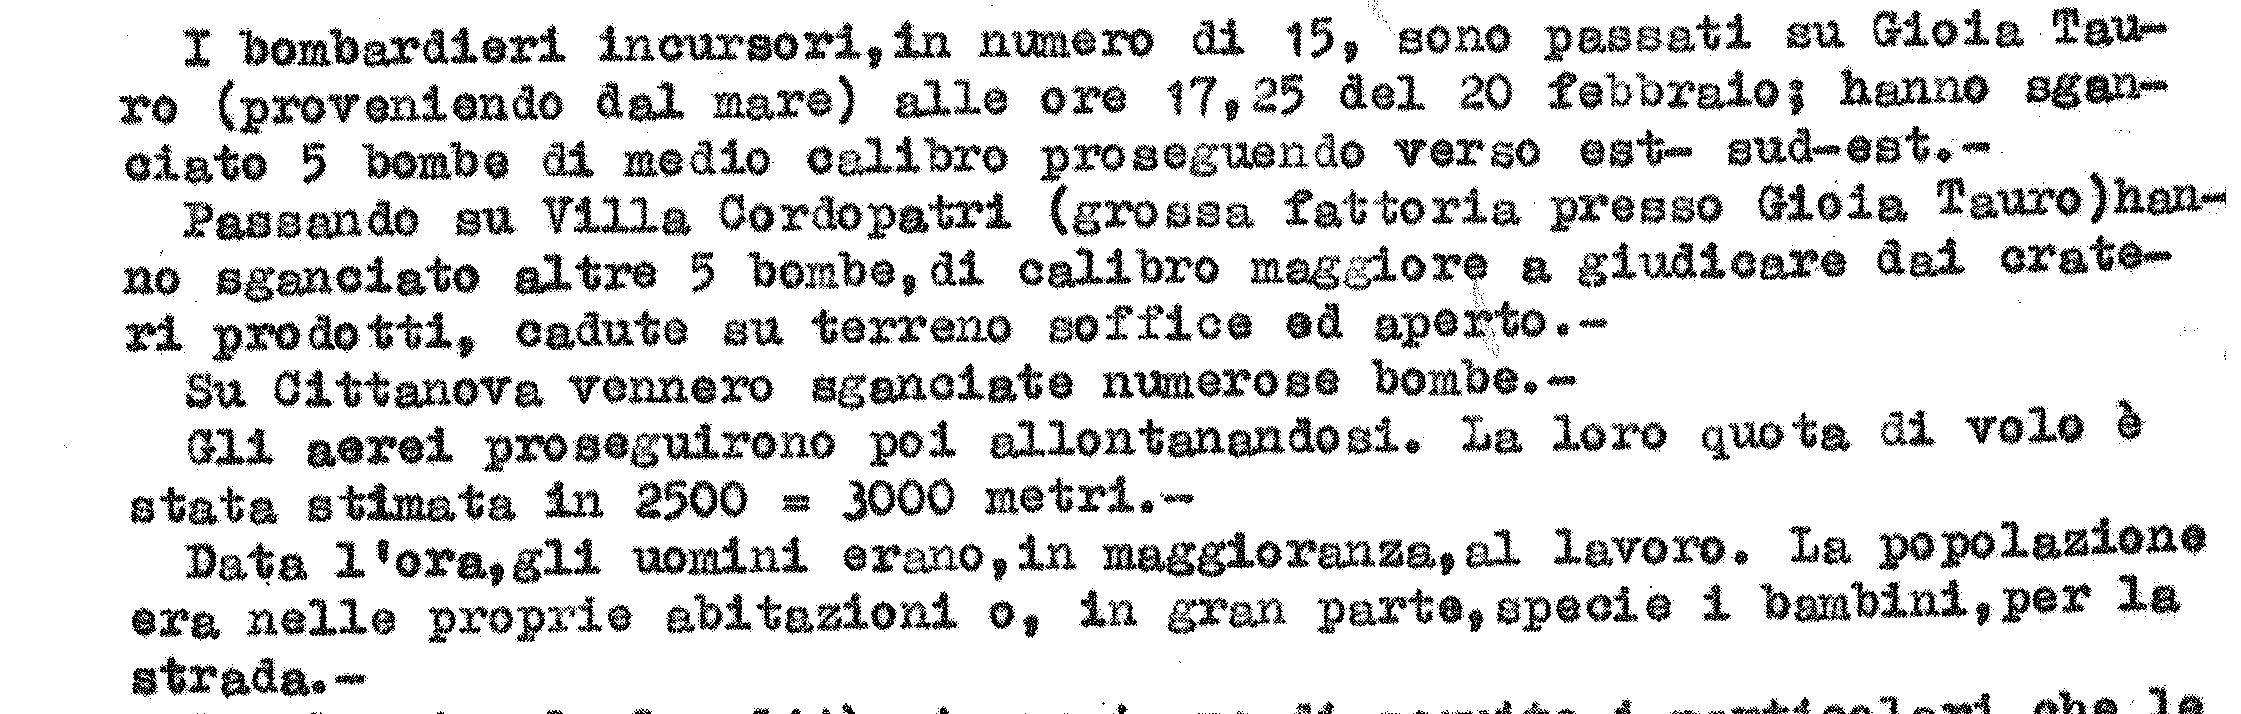 bombardamento aereo degli anglo-americani su Cittanova del 20 febbraio 1943